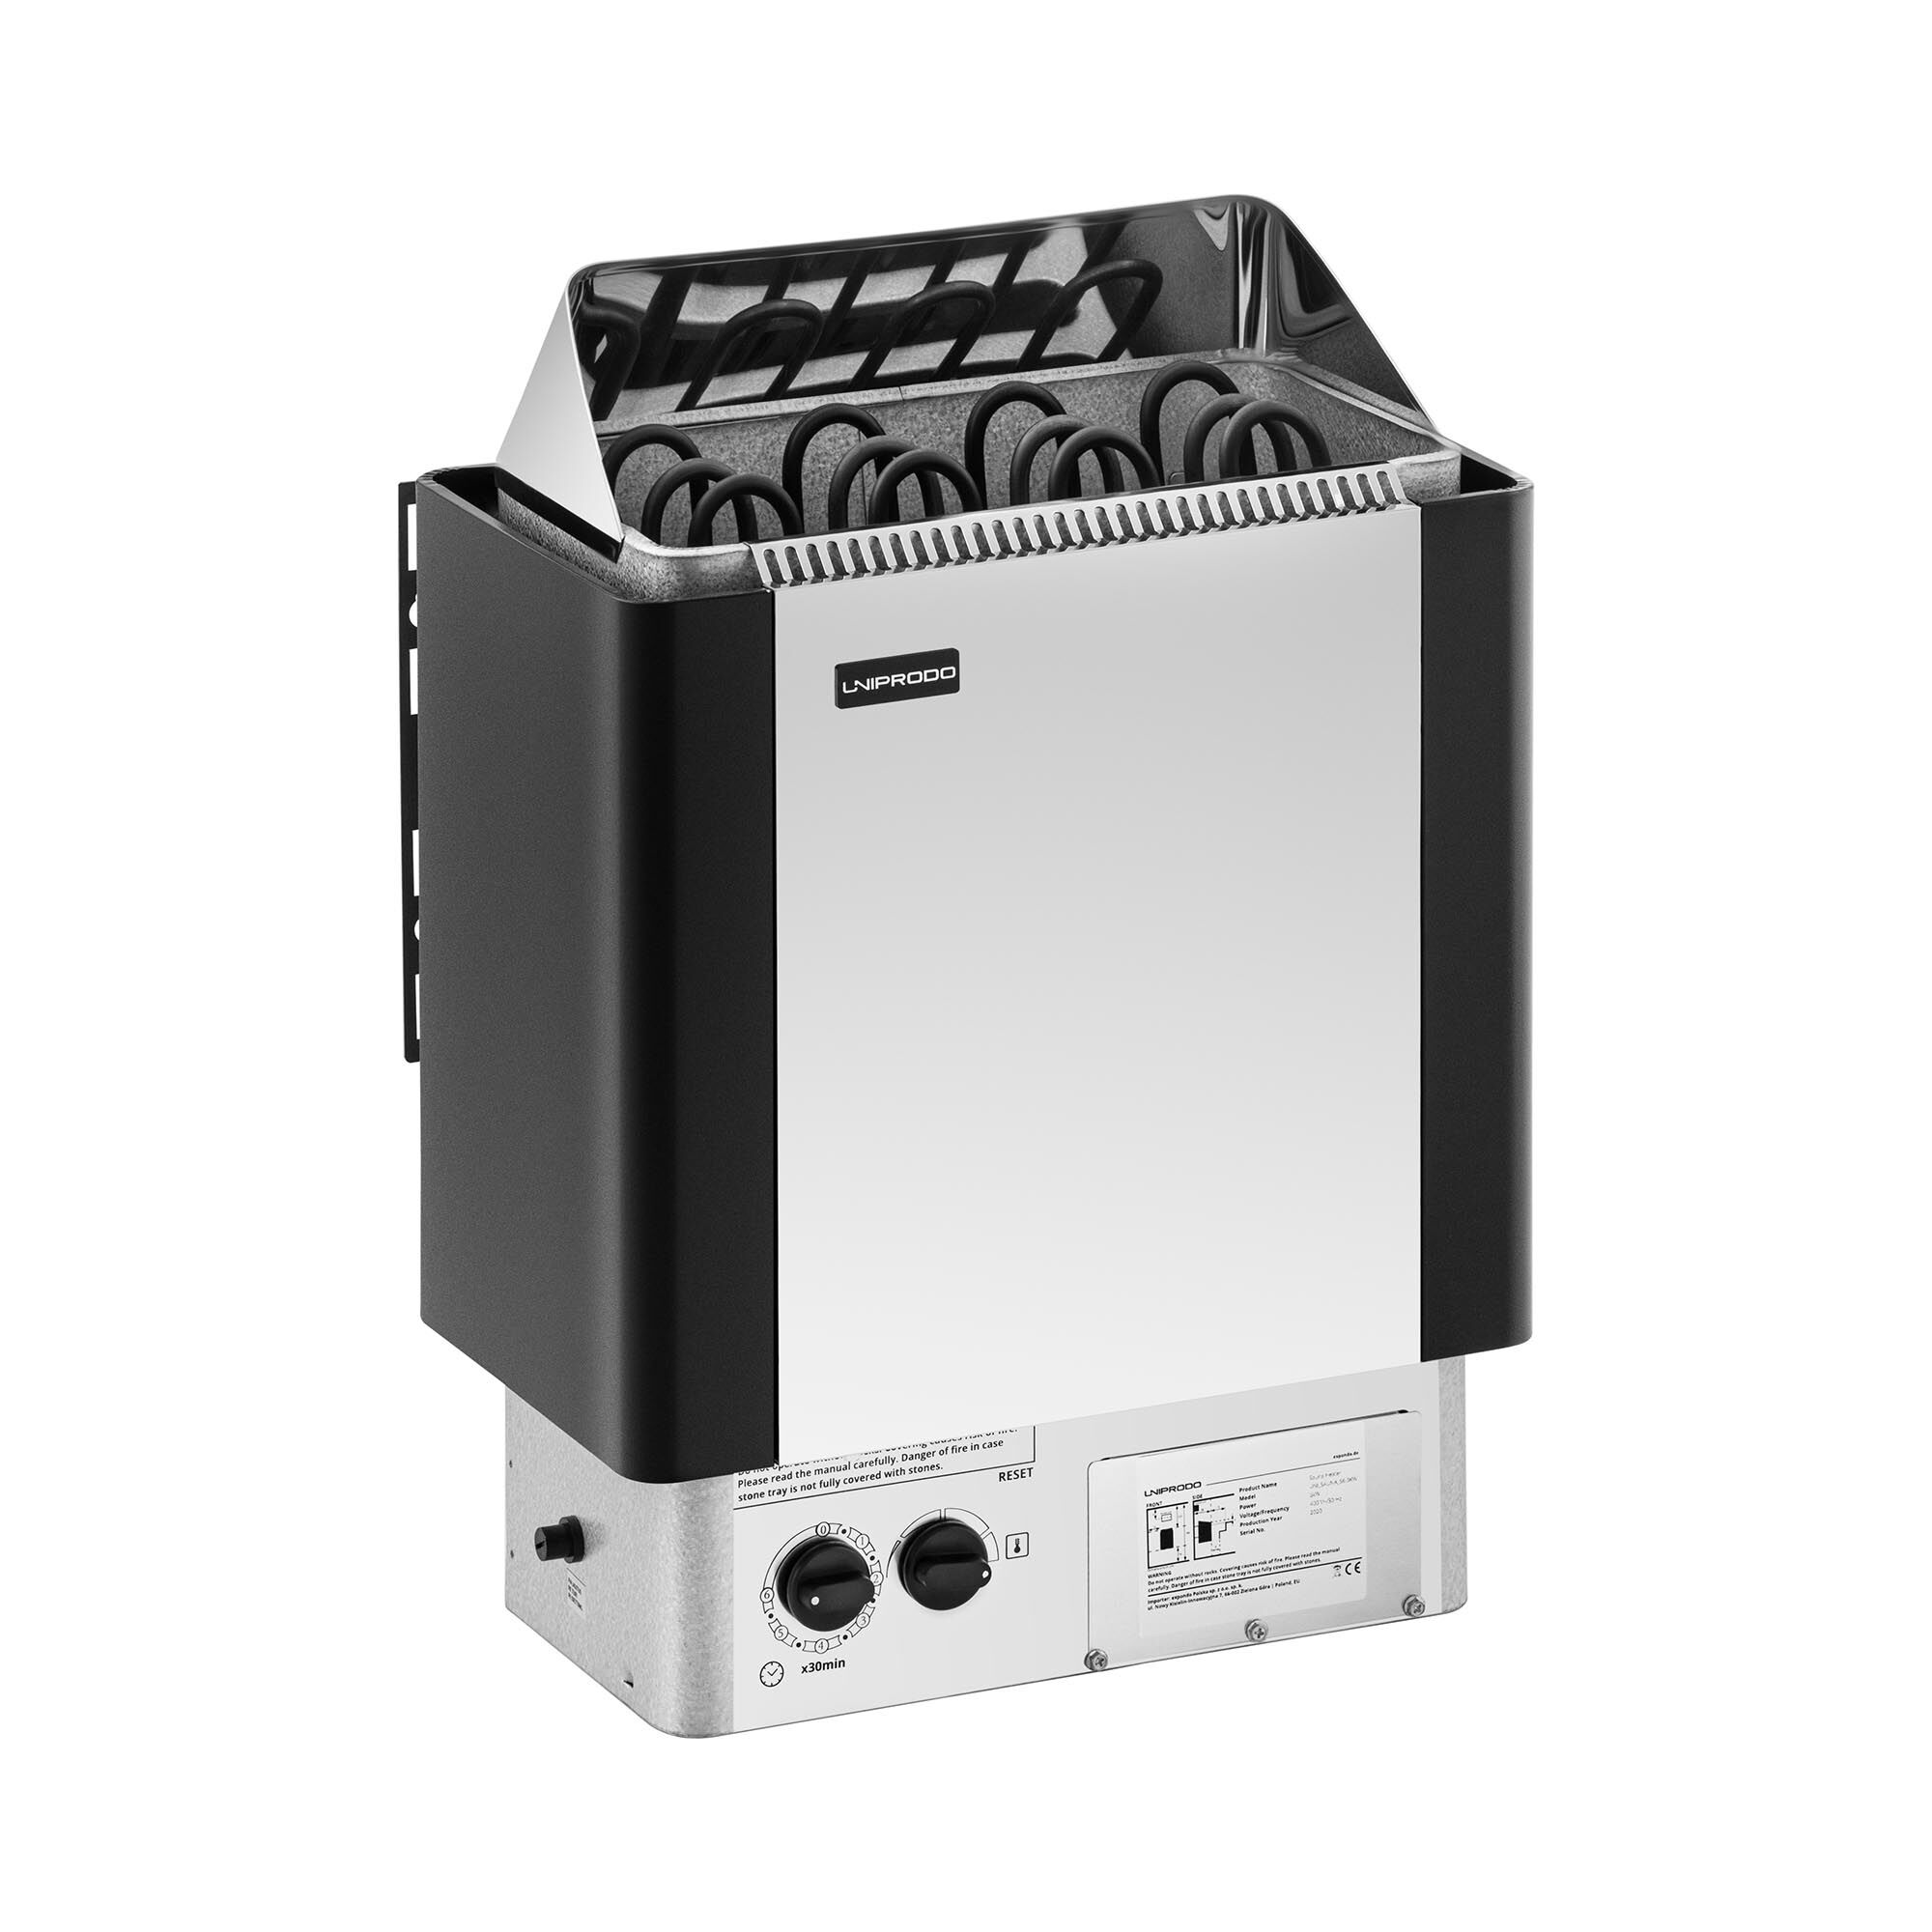 Uniprodo Saunaofen - 6 kW - 30 bis 110 °C - inkl. Steuerung